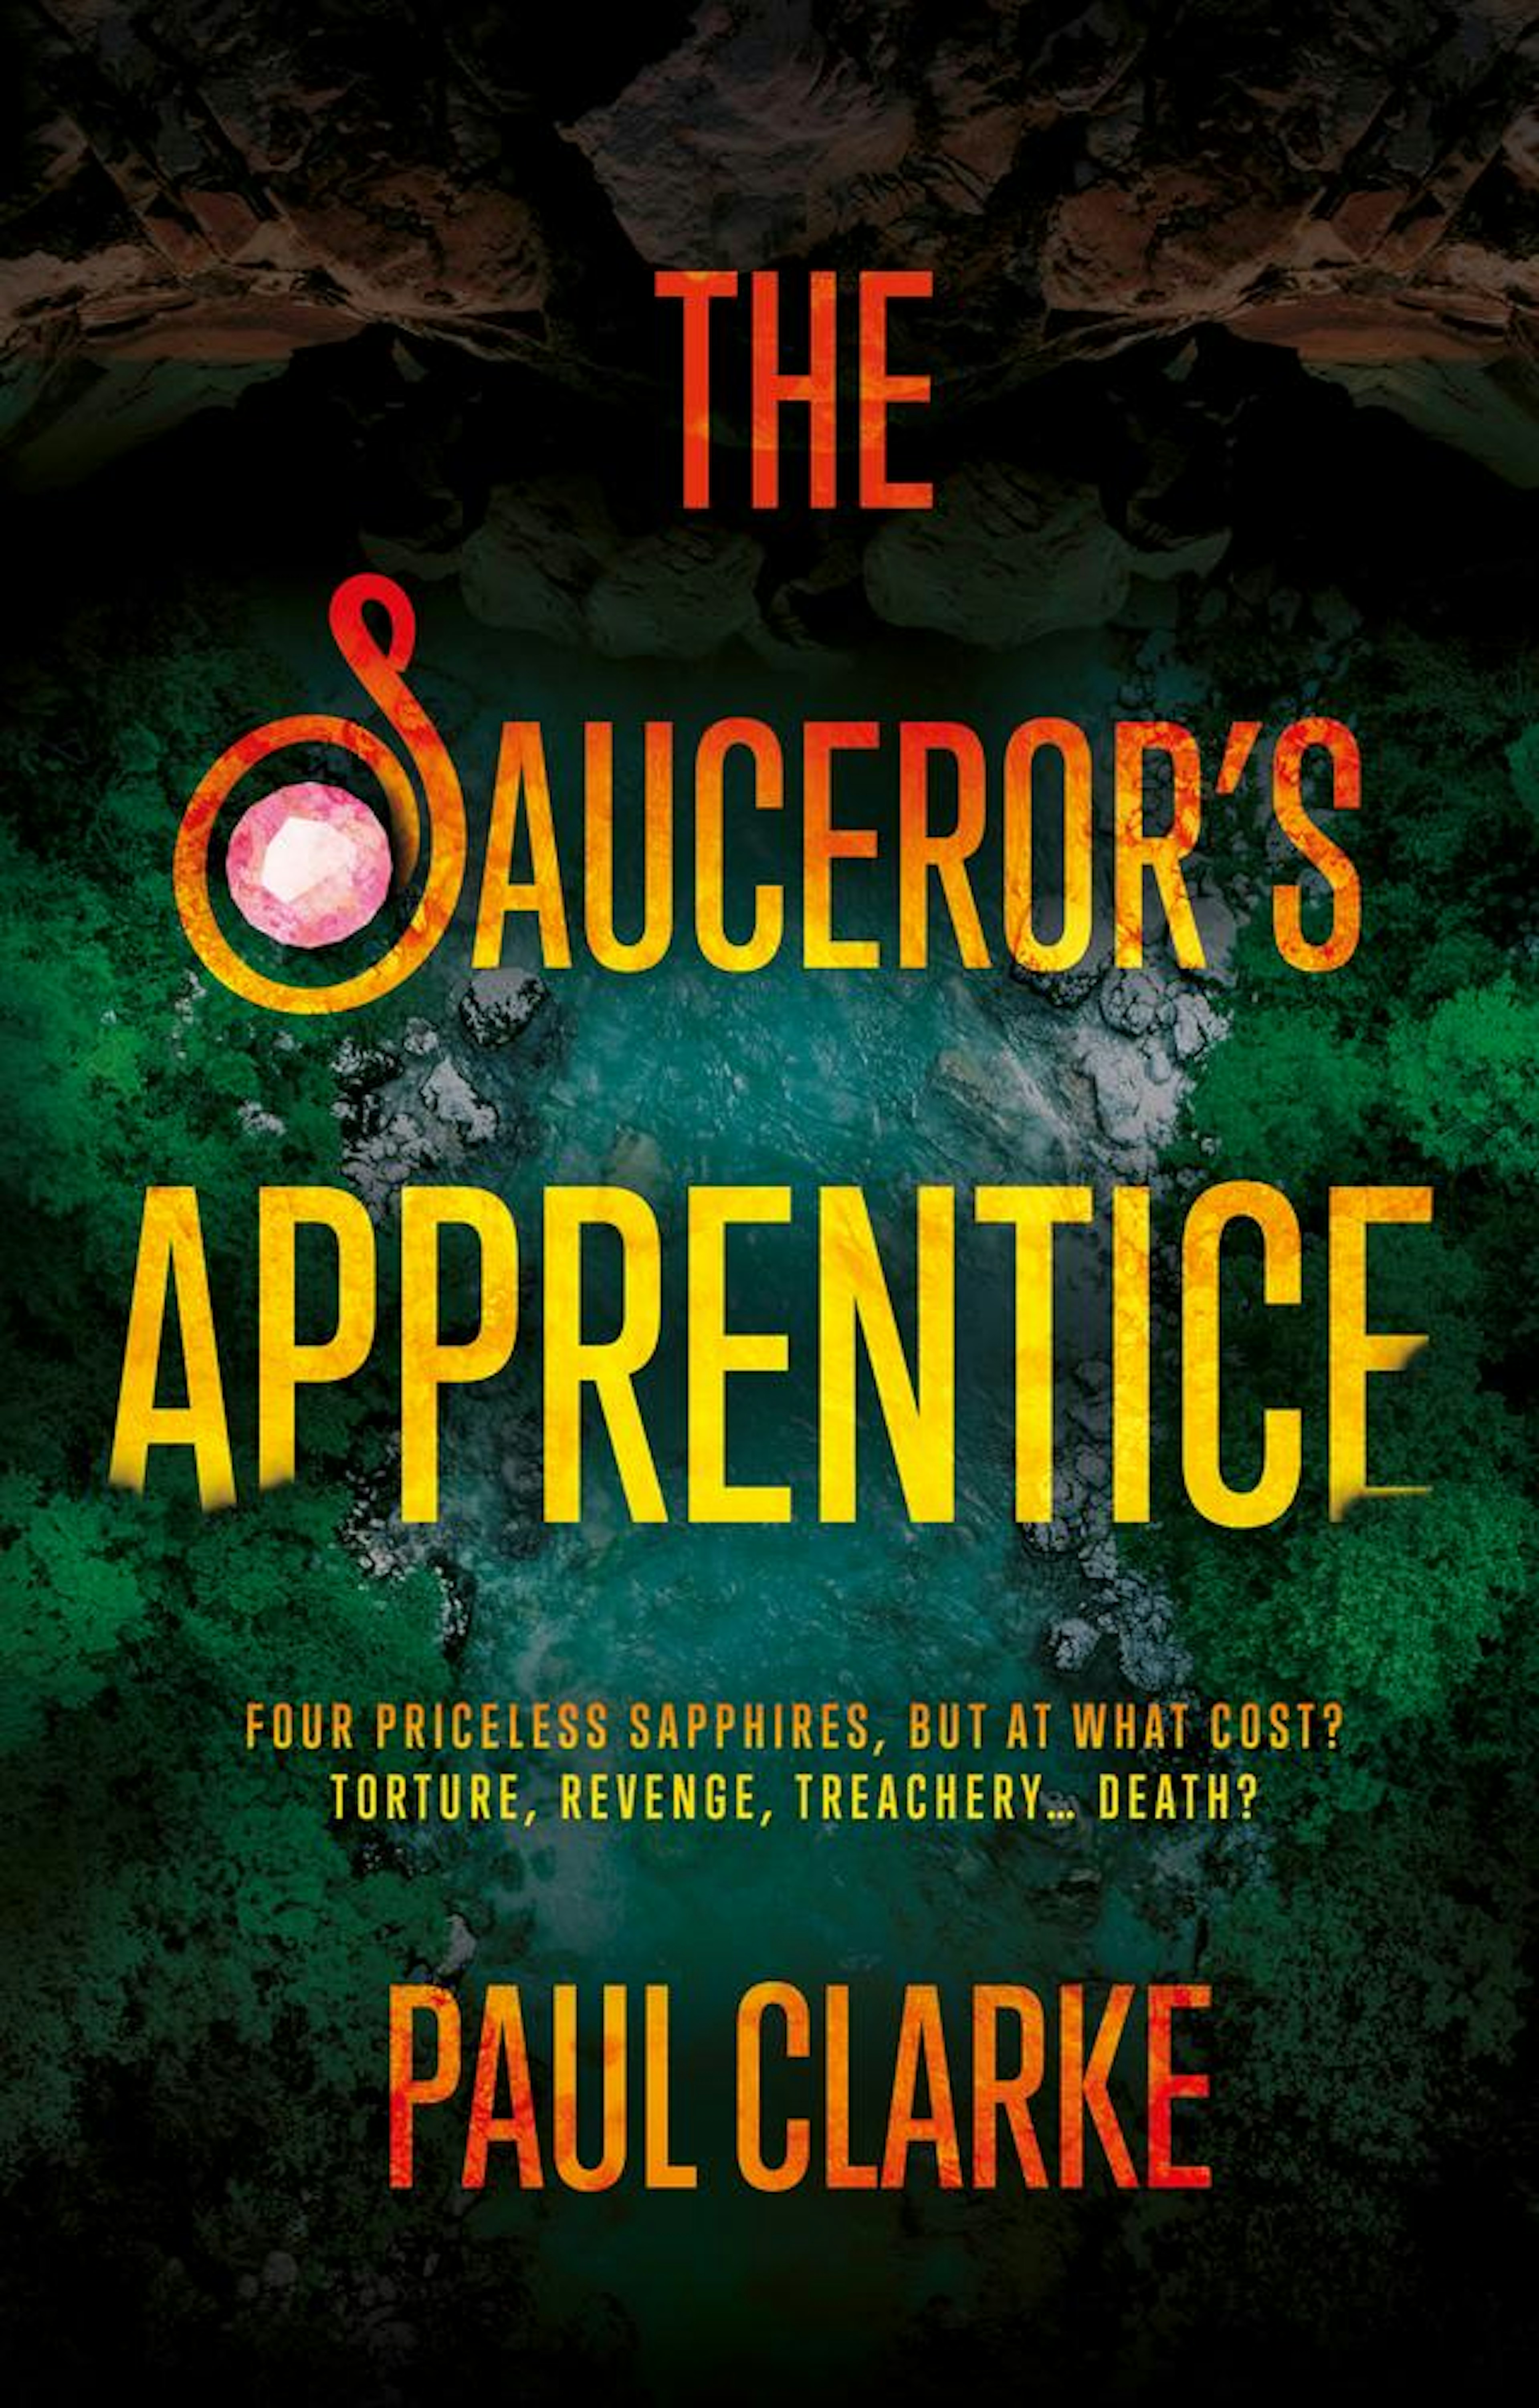 The Sauceror’s Apprentice